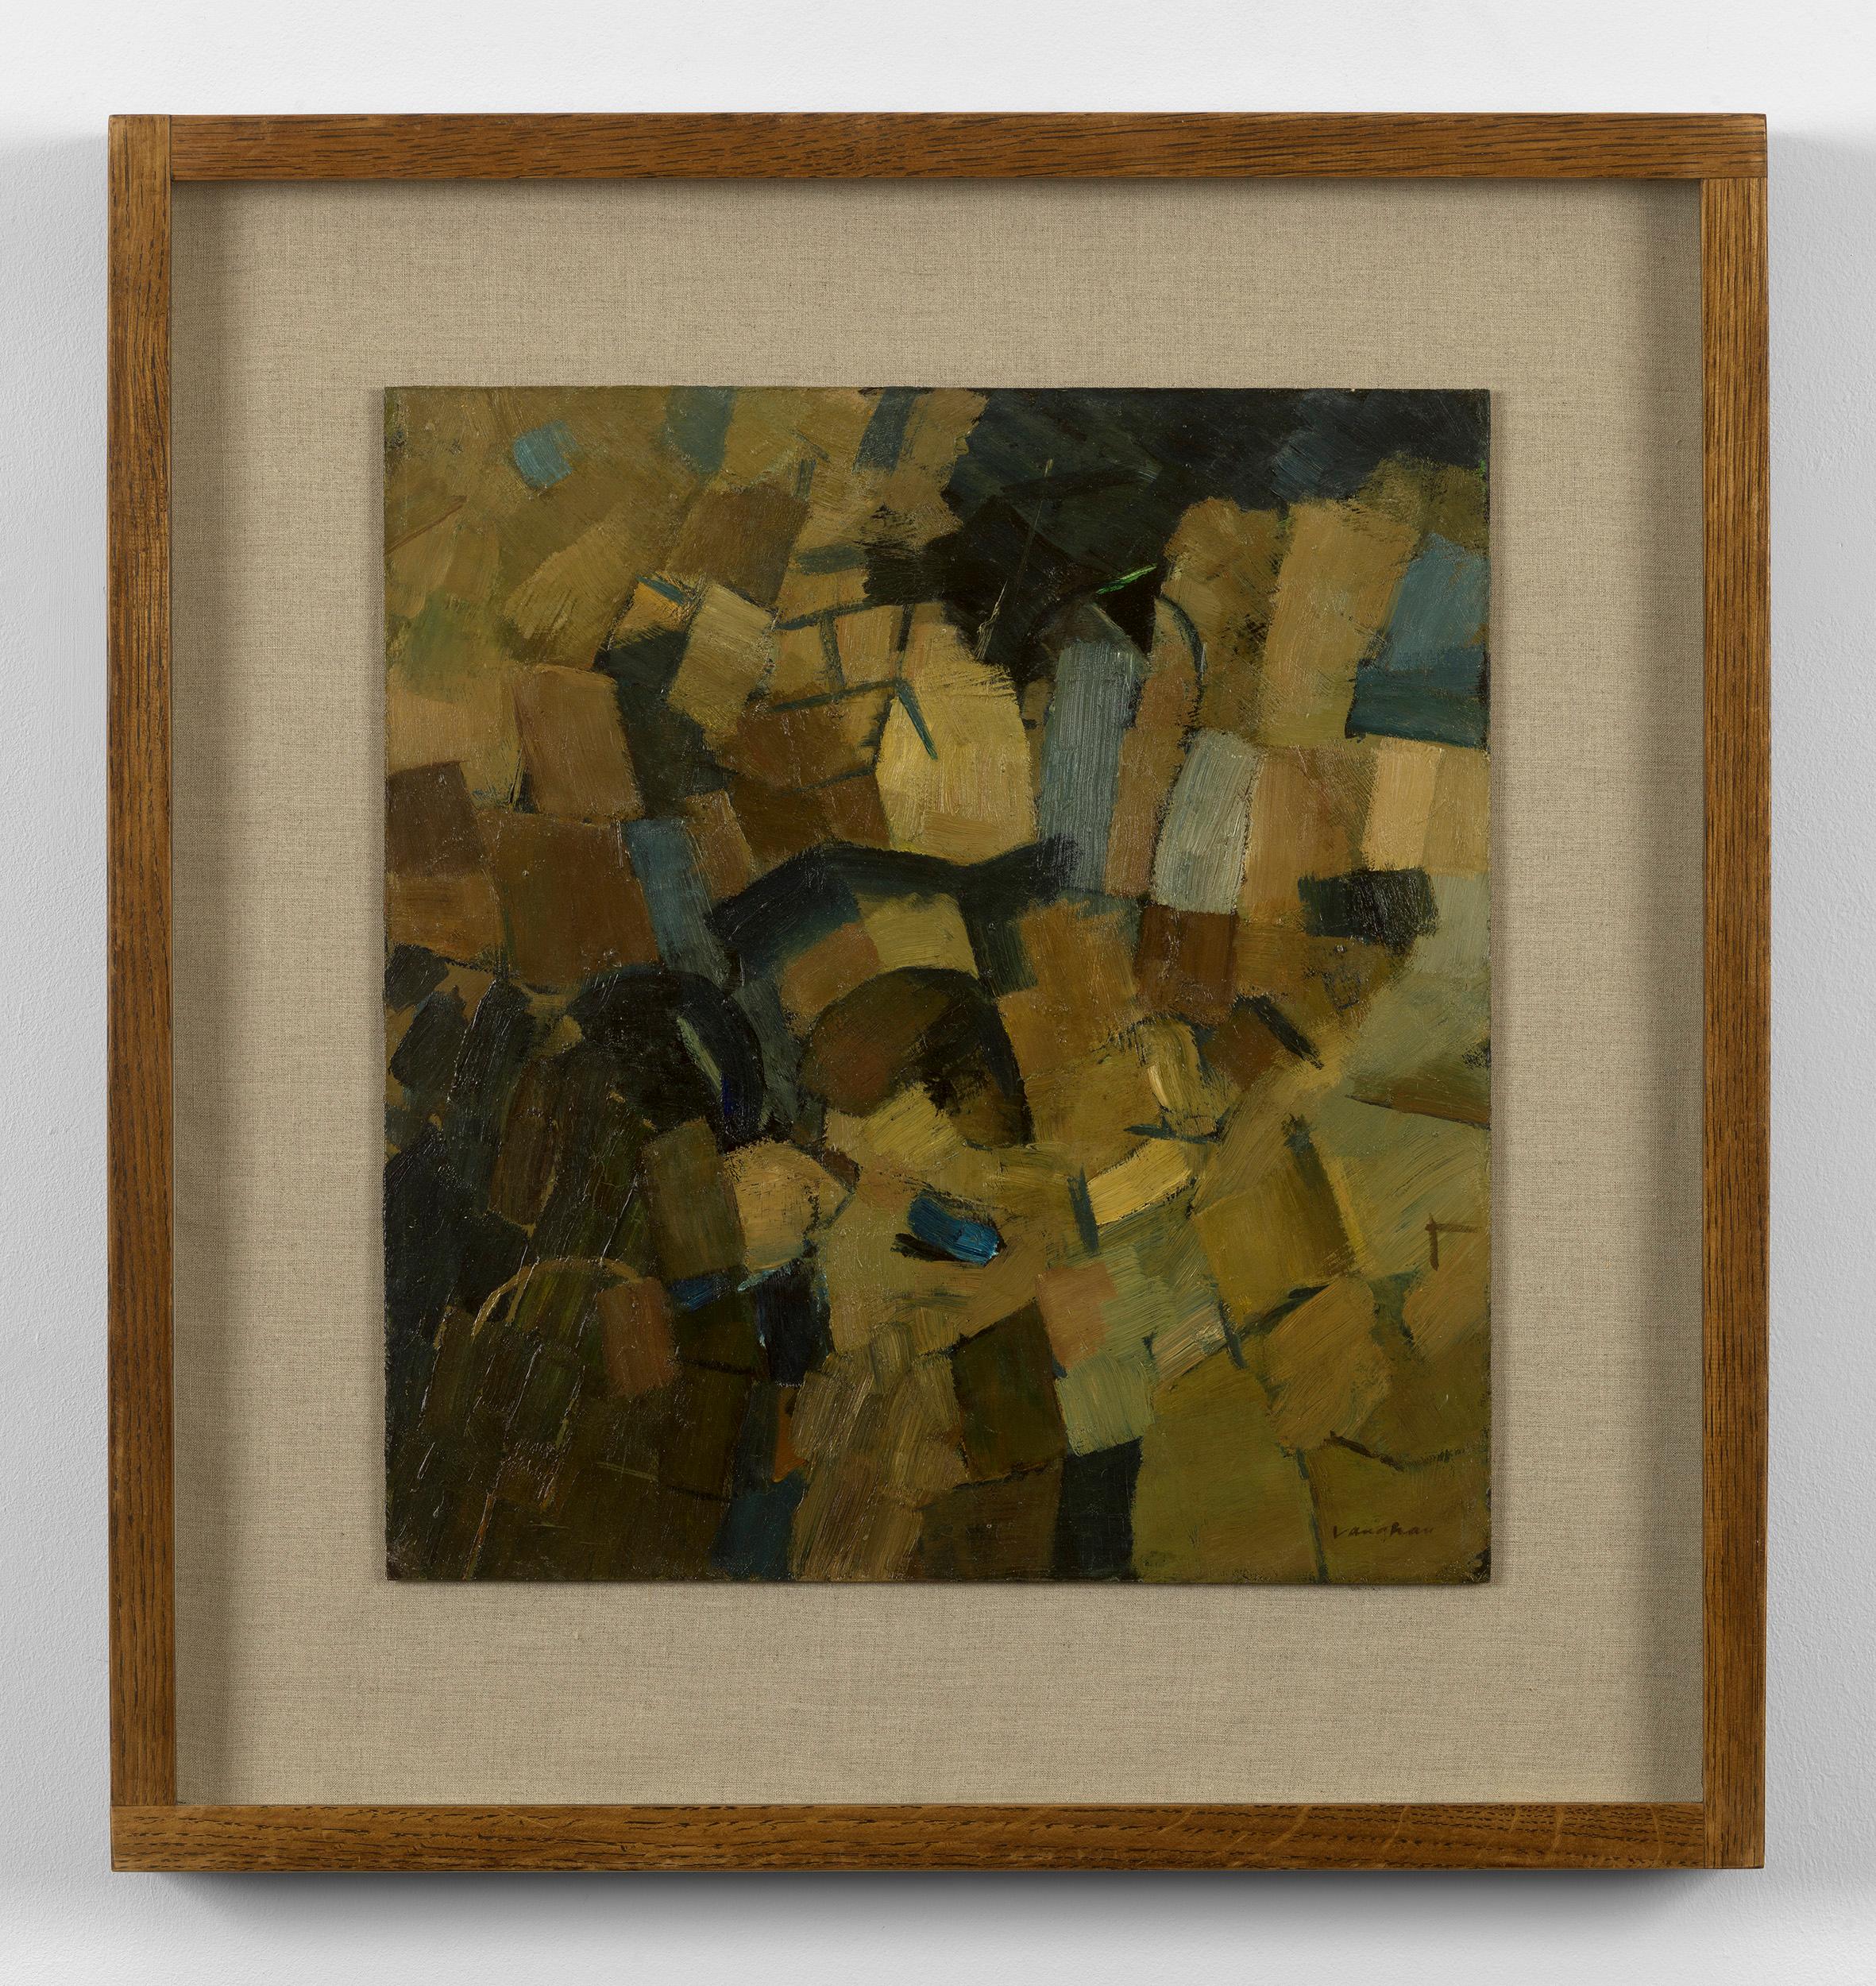 Signé en bas à droite.
À partir de la fin des années 1950, Vaughan peint des paysages sans figures qui frôlent l'abstraction totale : des œuvres dans lesquelles la couleur se décline en compositions structurées par des unités plus ou moins